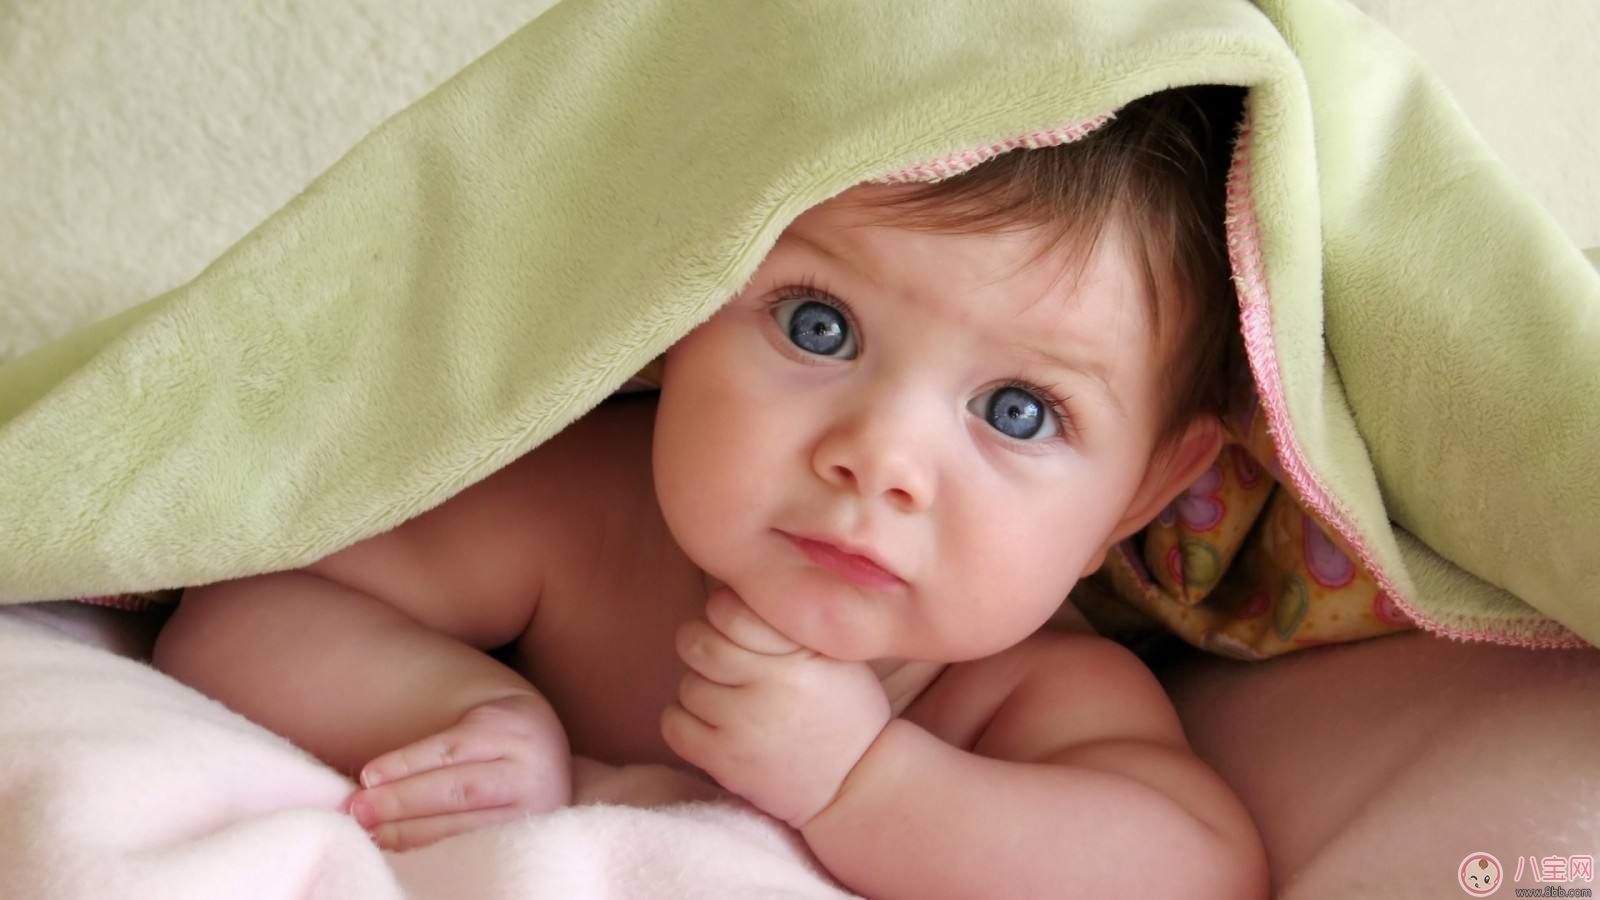 睫毛|婴幼儿眼睫毛如何修剪及矫正